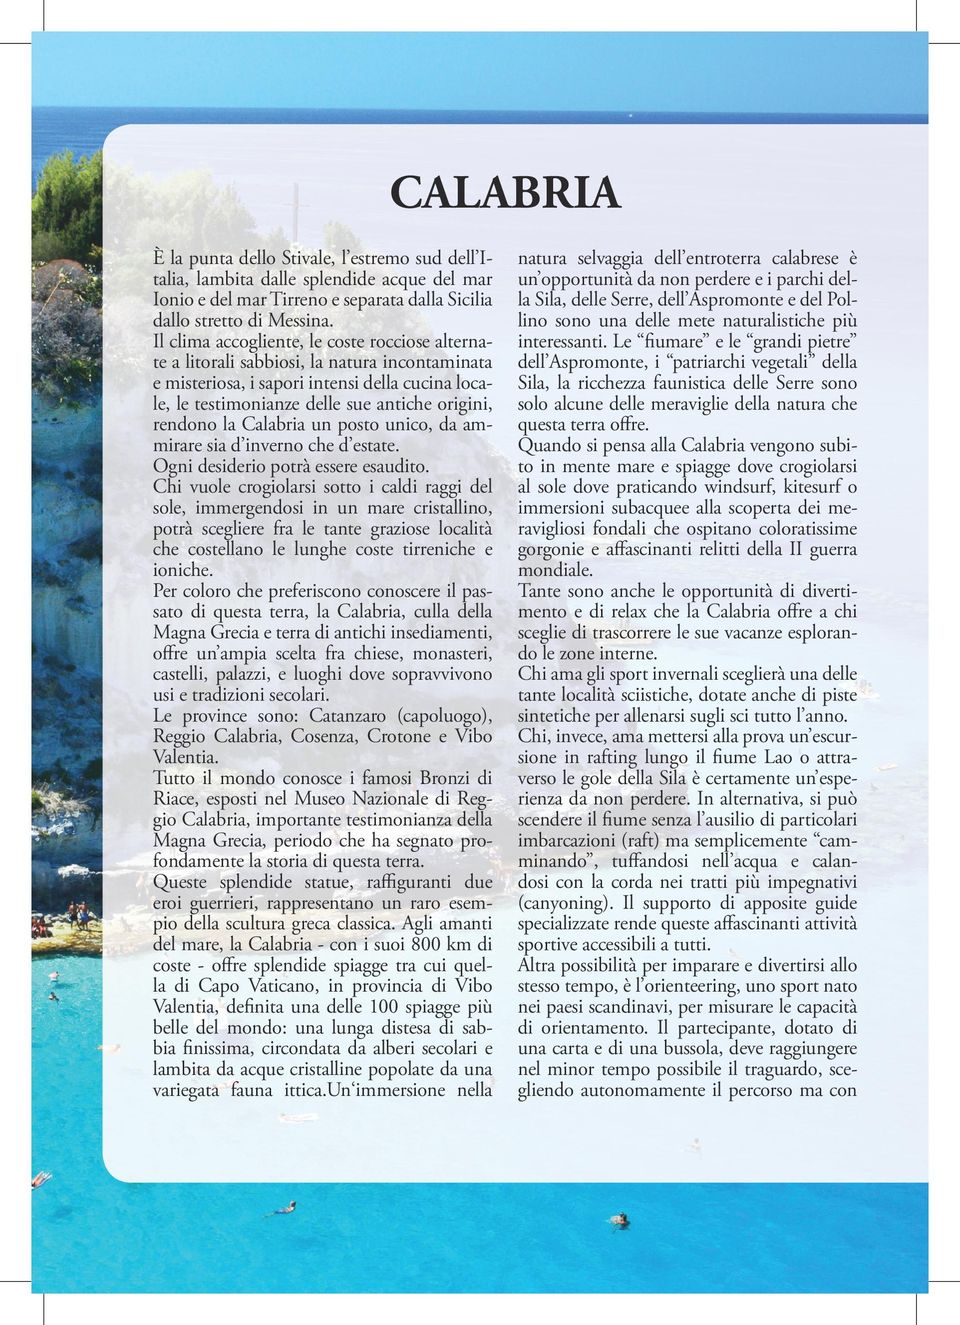 la Calabria un posto unico, da ammirare sia d inverno che d estate. Ogni desiderio potrà essere esaudito.